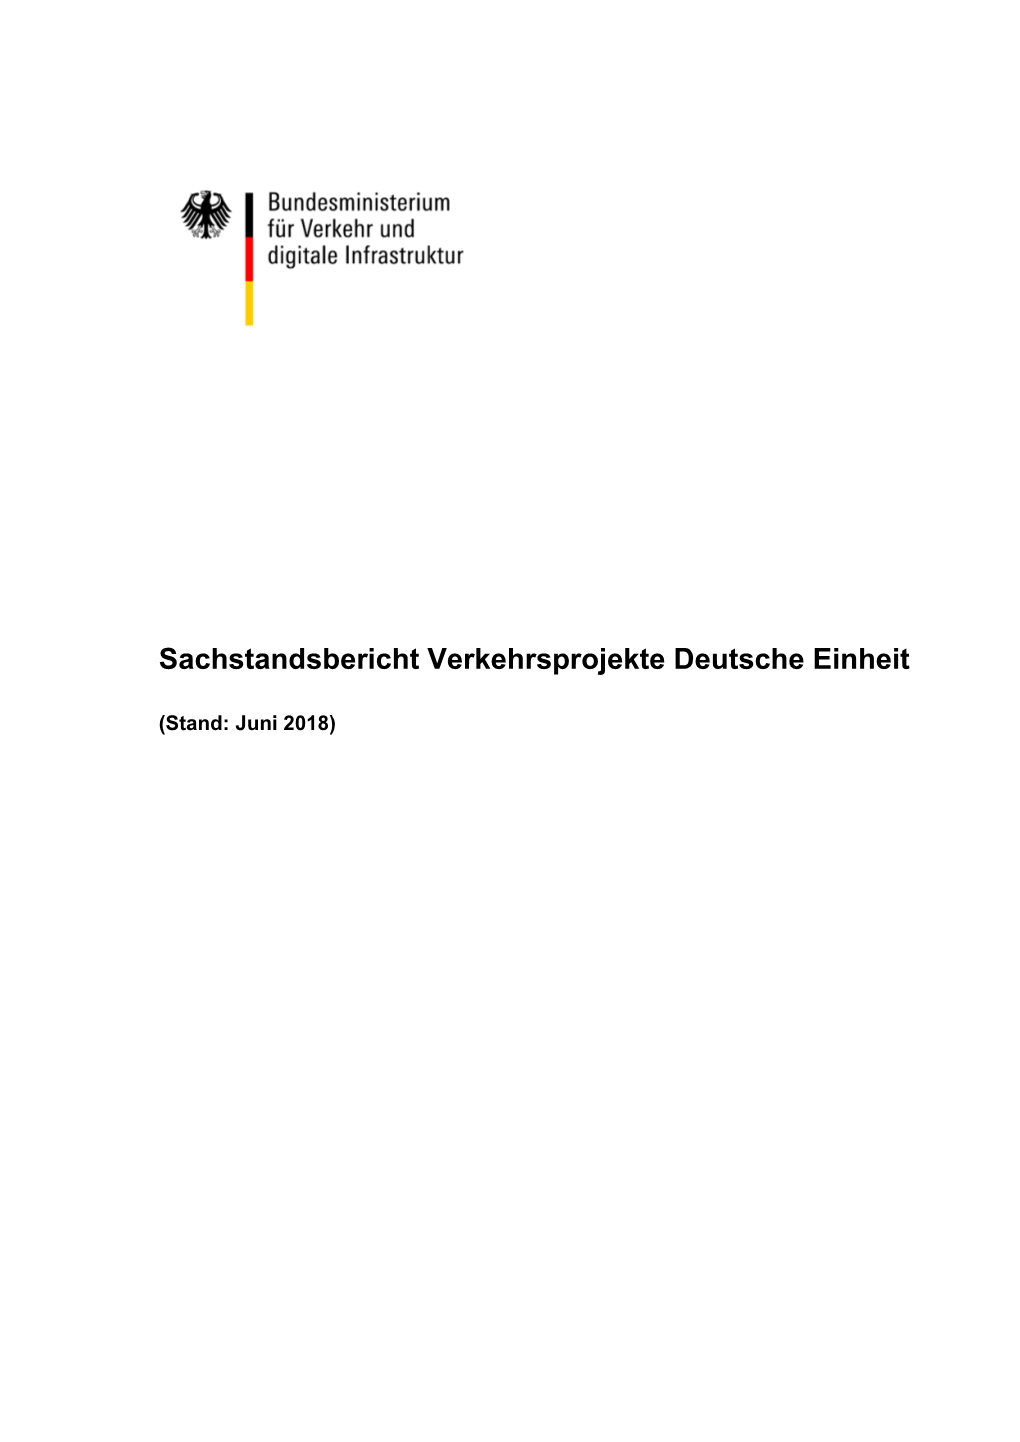 Sachstandsbericht Verkehrsprojekte Deutsche Einheit 2018